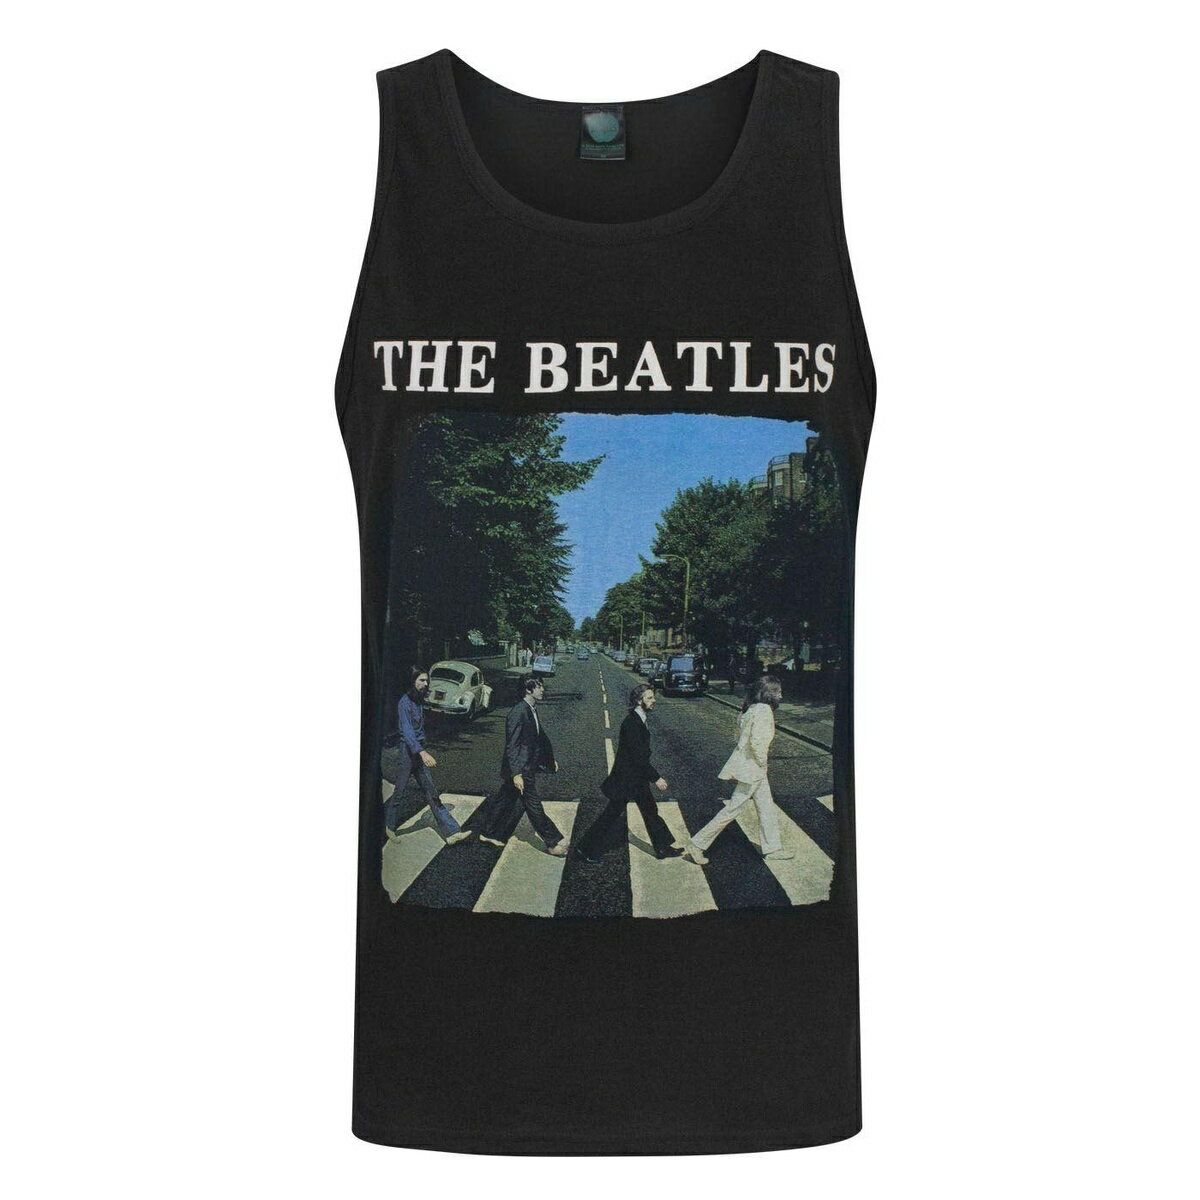 (ザ・ビートルズ) The Beatles オフィシャル商品 メンズ Abbey Road タンクトップ 袖なし カットソー 【海外通販】